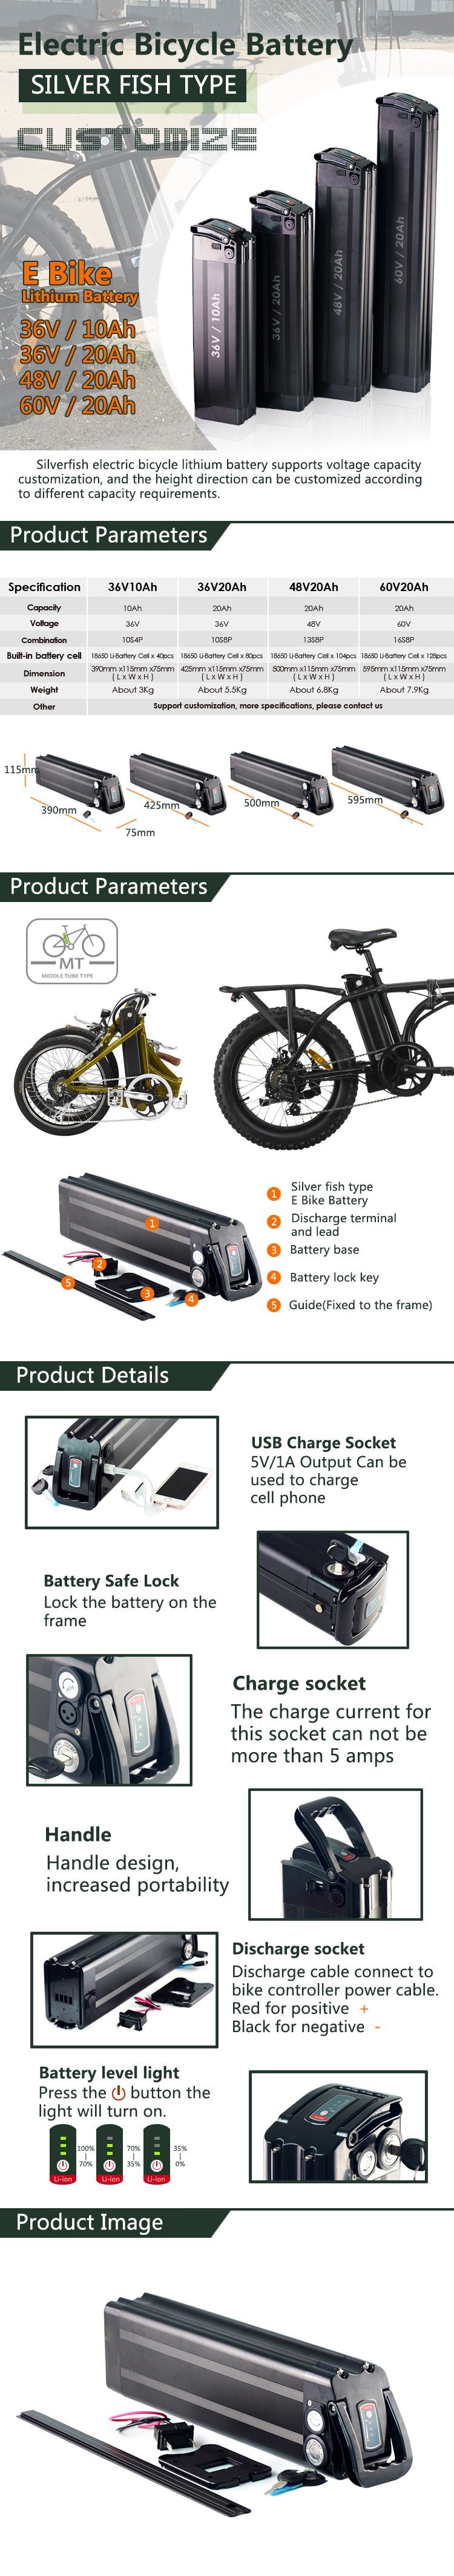 Beste 18650 18Ah 36V elektrische Fahrrad-Batterie für Ebike